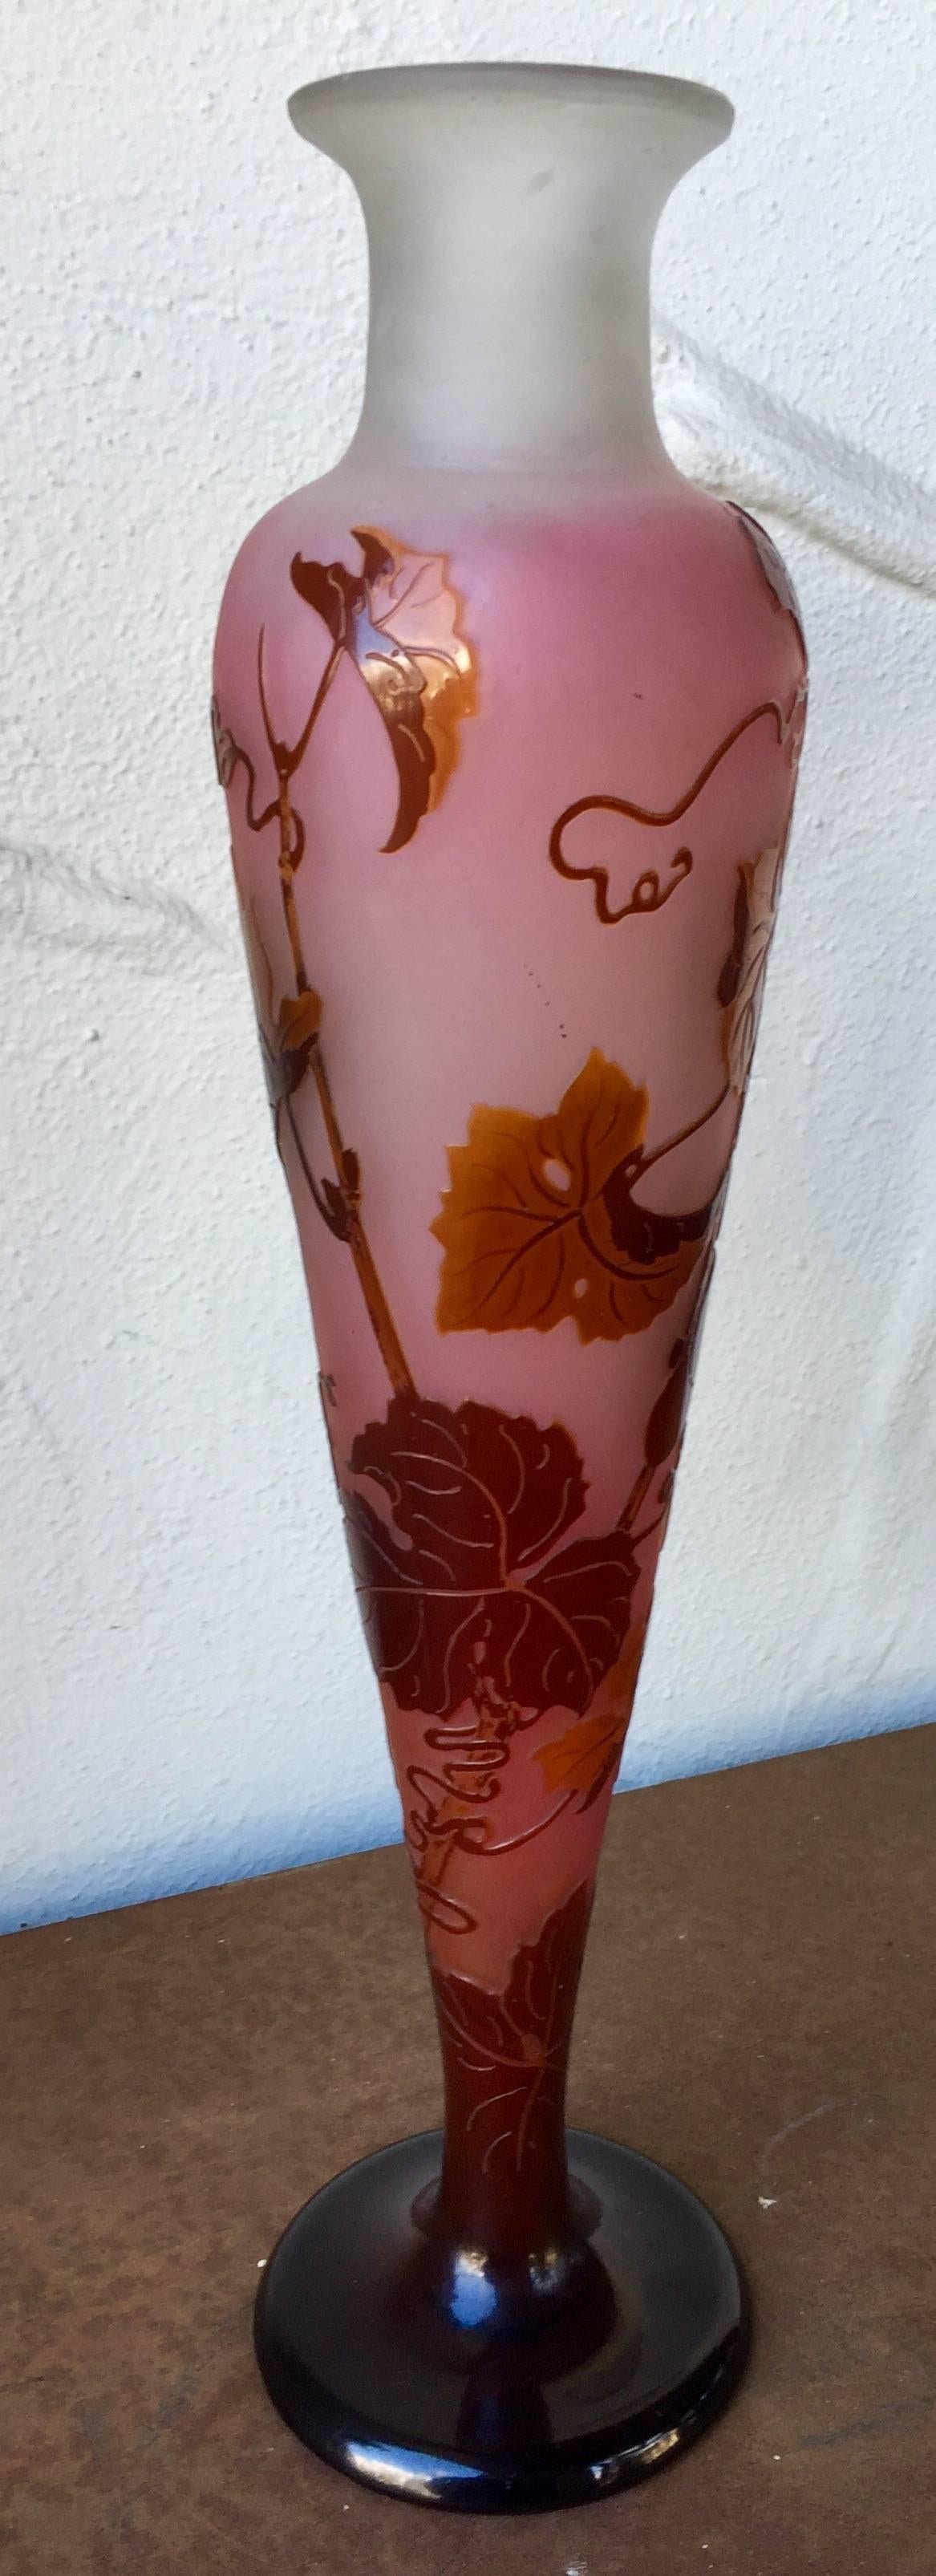 French Emile Galle Art Nouveau Vase, Nancy Art